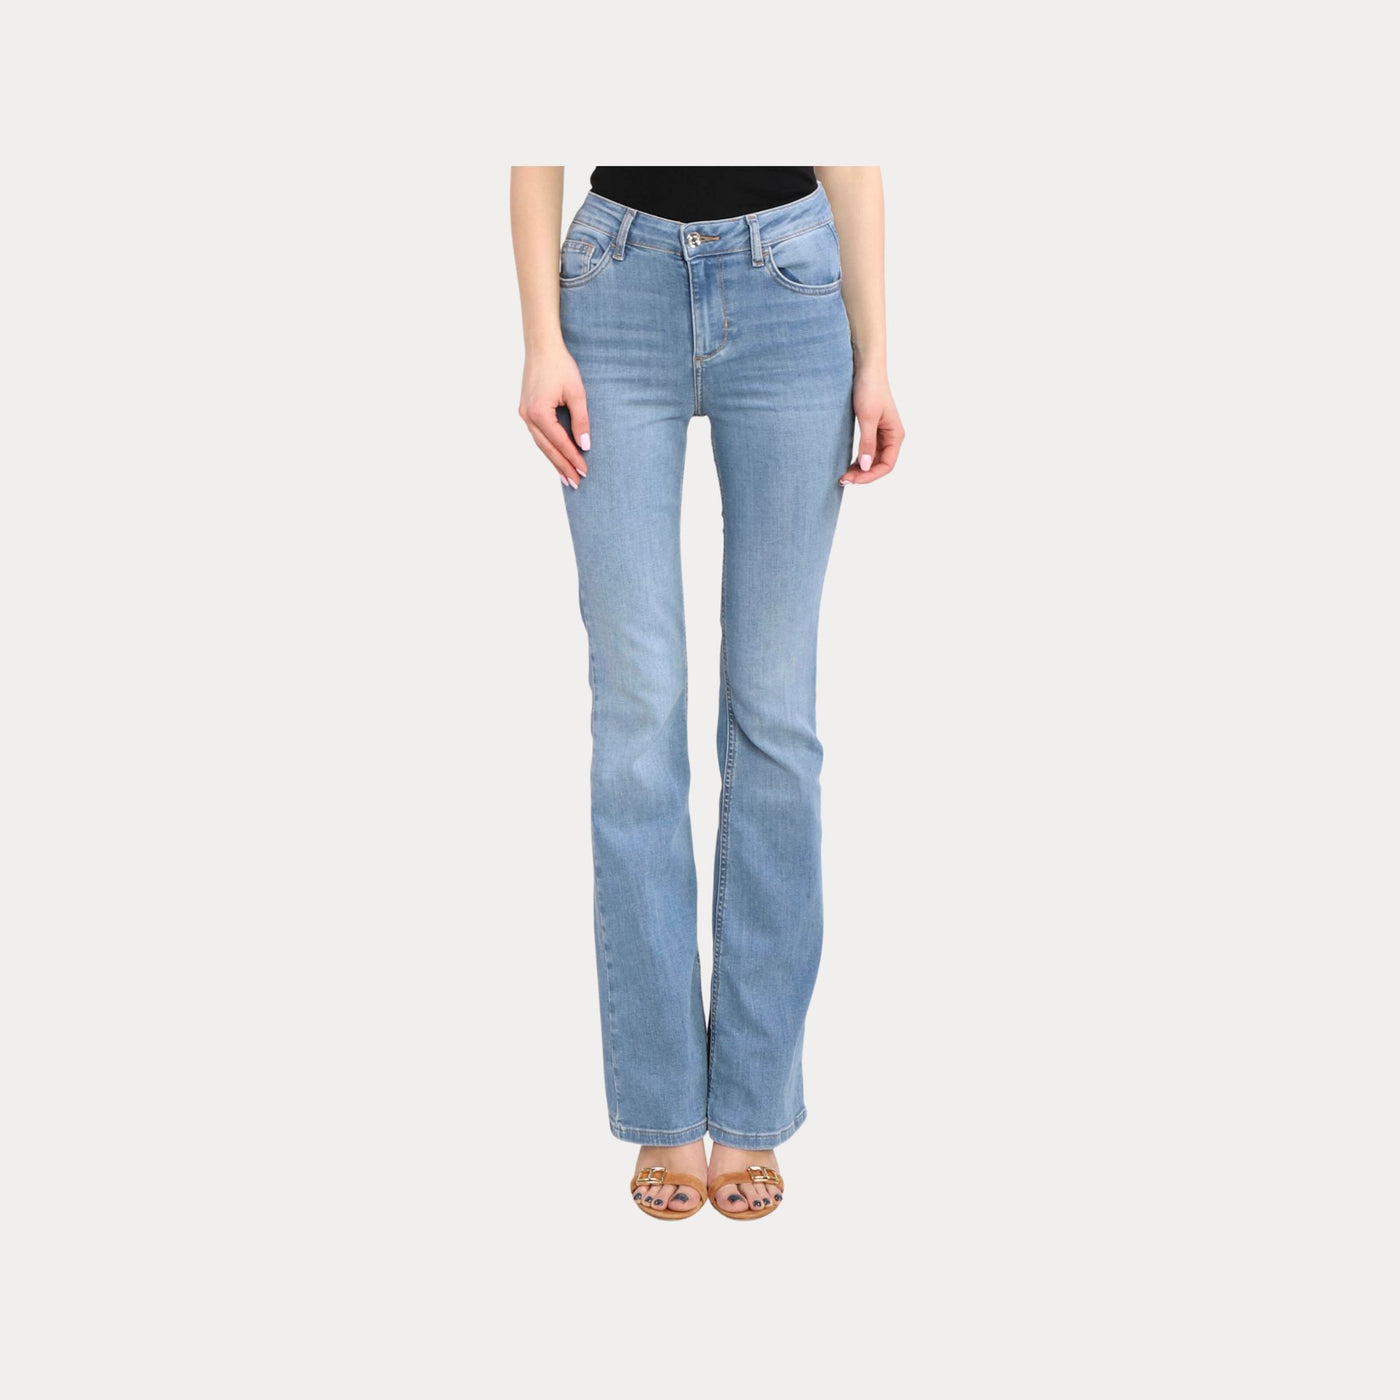 Jeans Donna modello a zampa